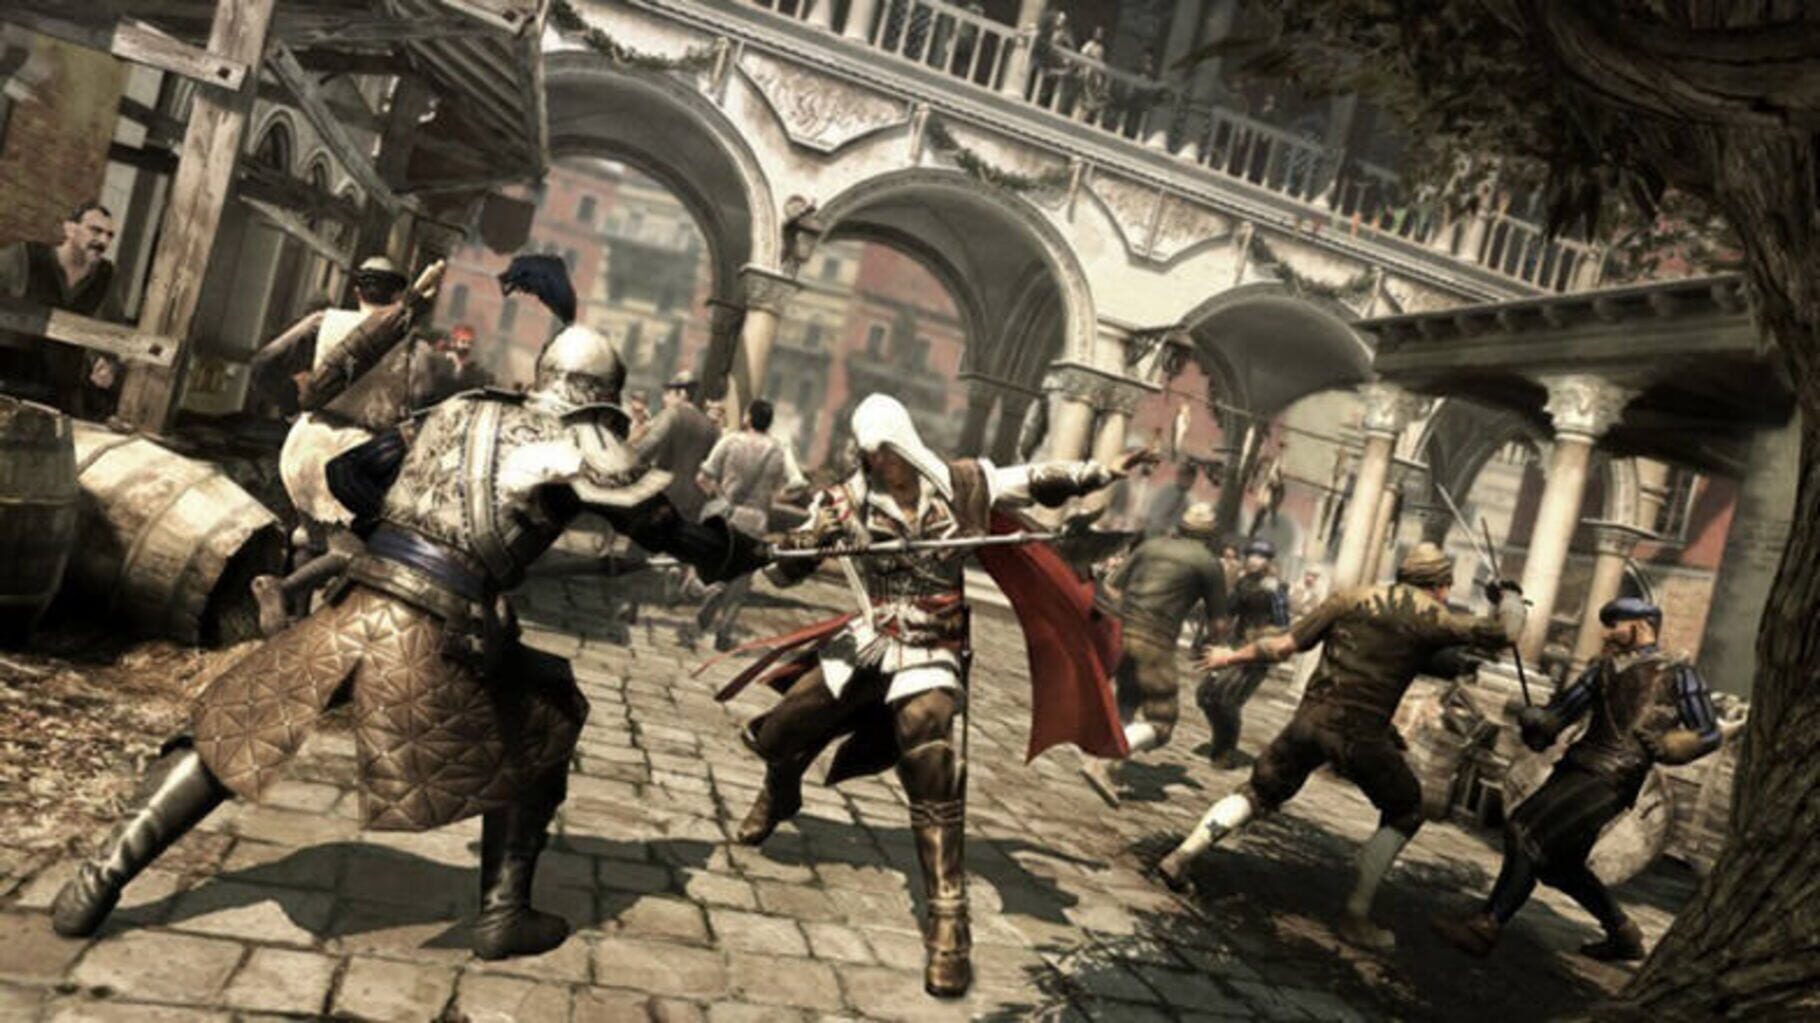 Assassin's Creed Ezio Auditore Pack Image